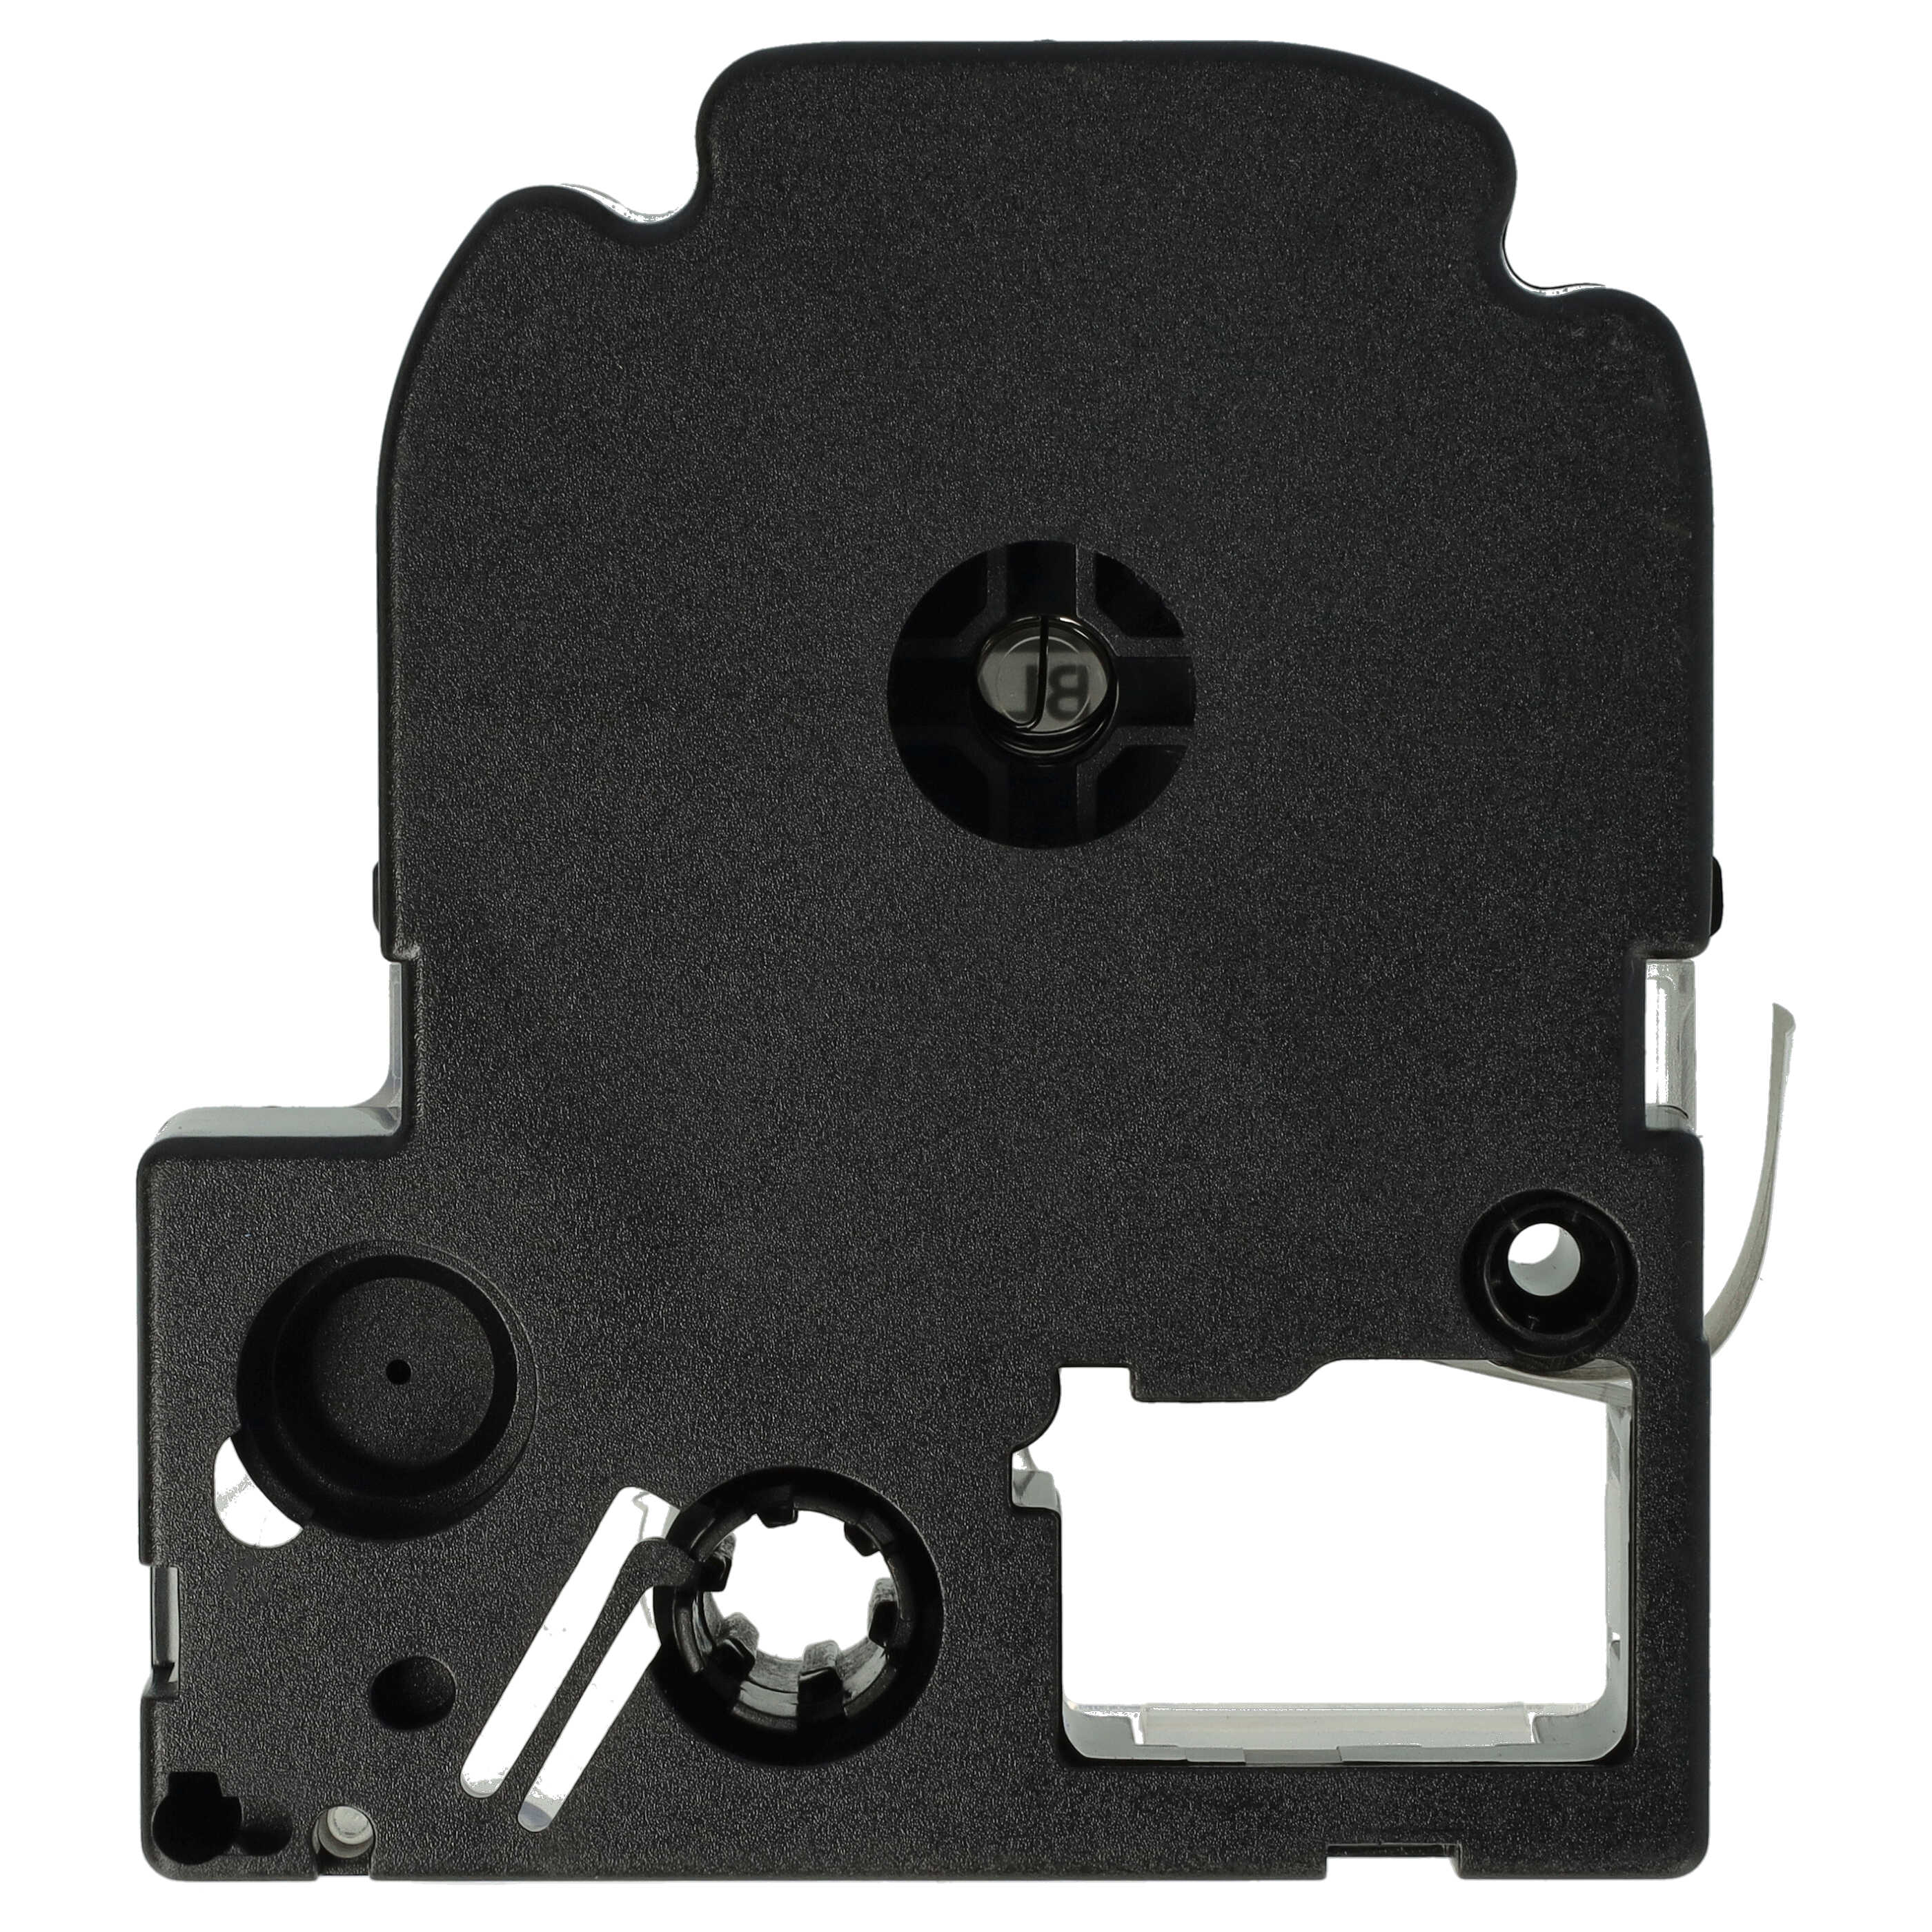 3x Cassettes à ruban remplacent Epson SS12KW, LC-4WBN - 12mm lettrage Noir ruban Blanc